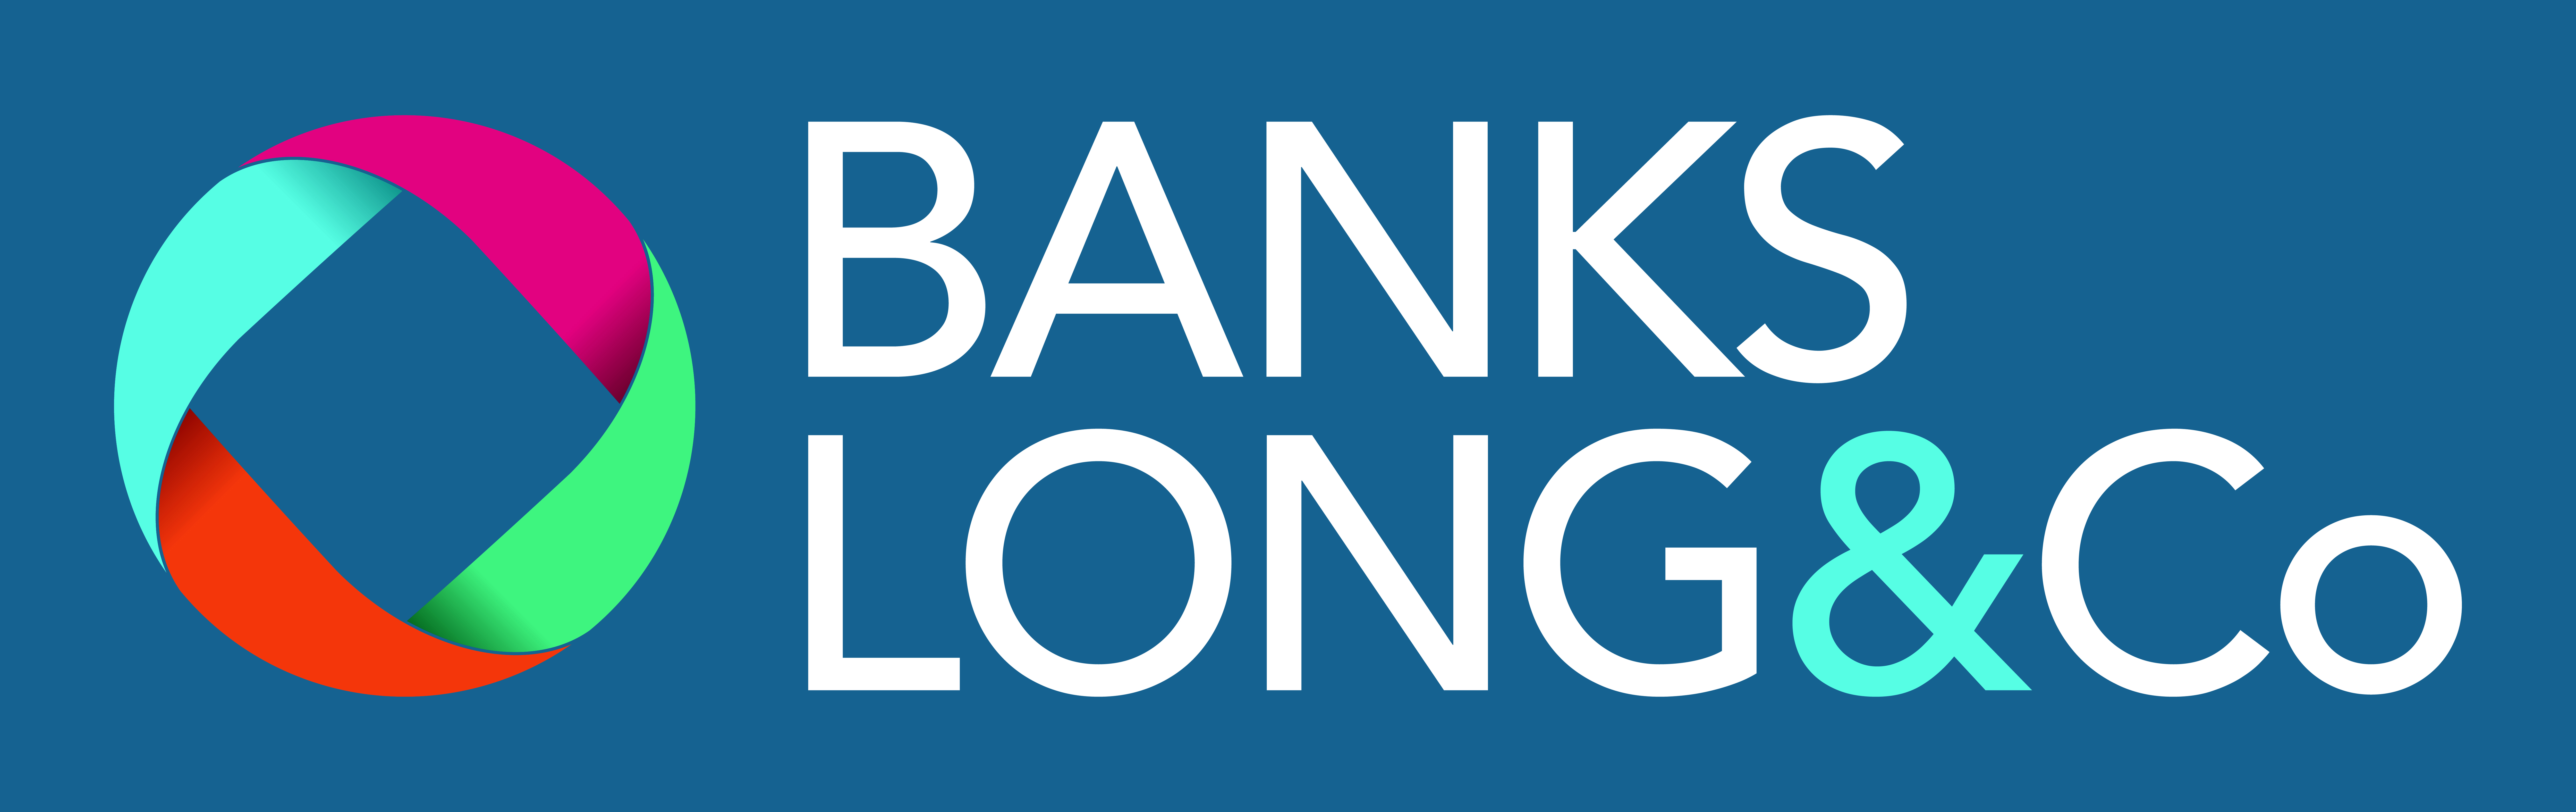 Banks Long & Co company logo